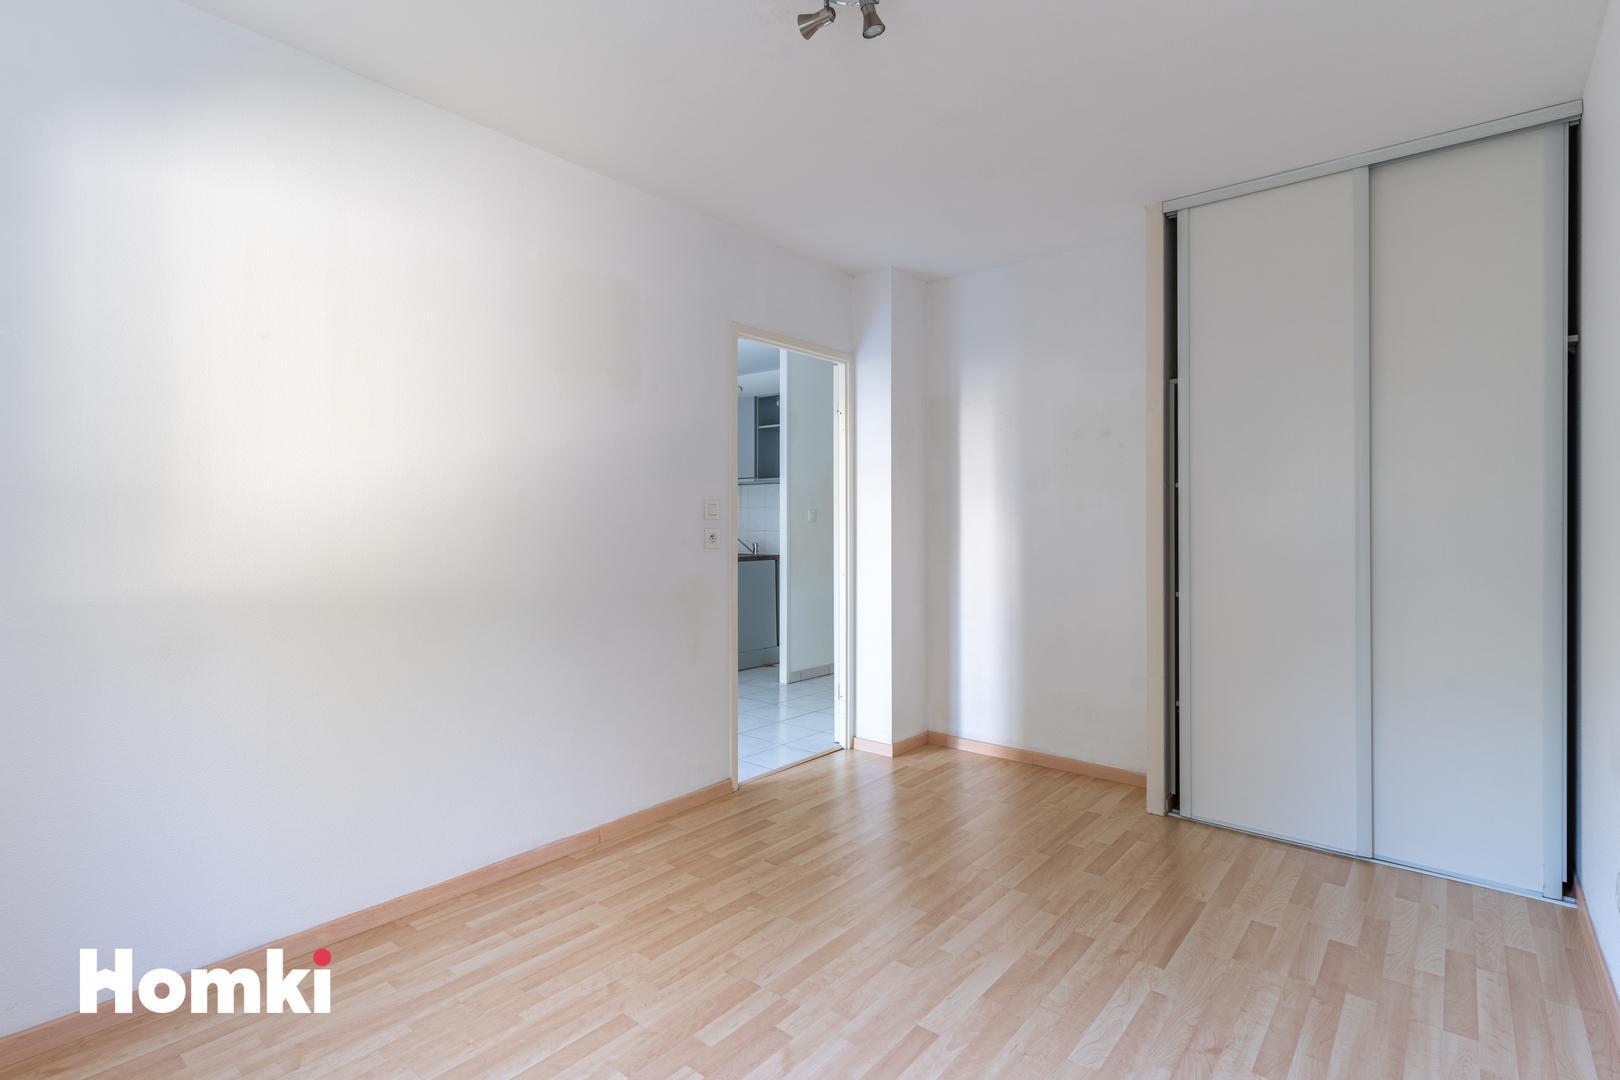 Homki - Vente Appartement  de 36.0 m² à Mérignac 33700